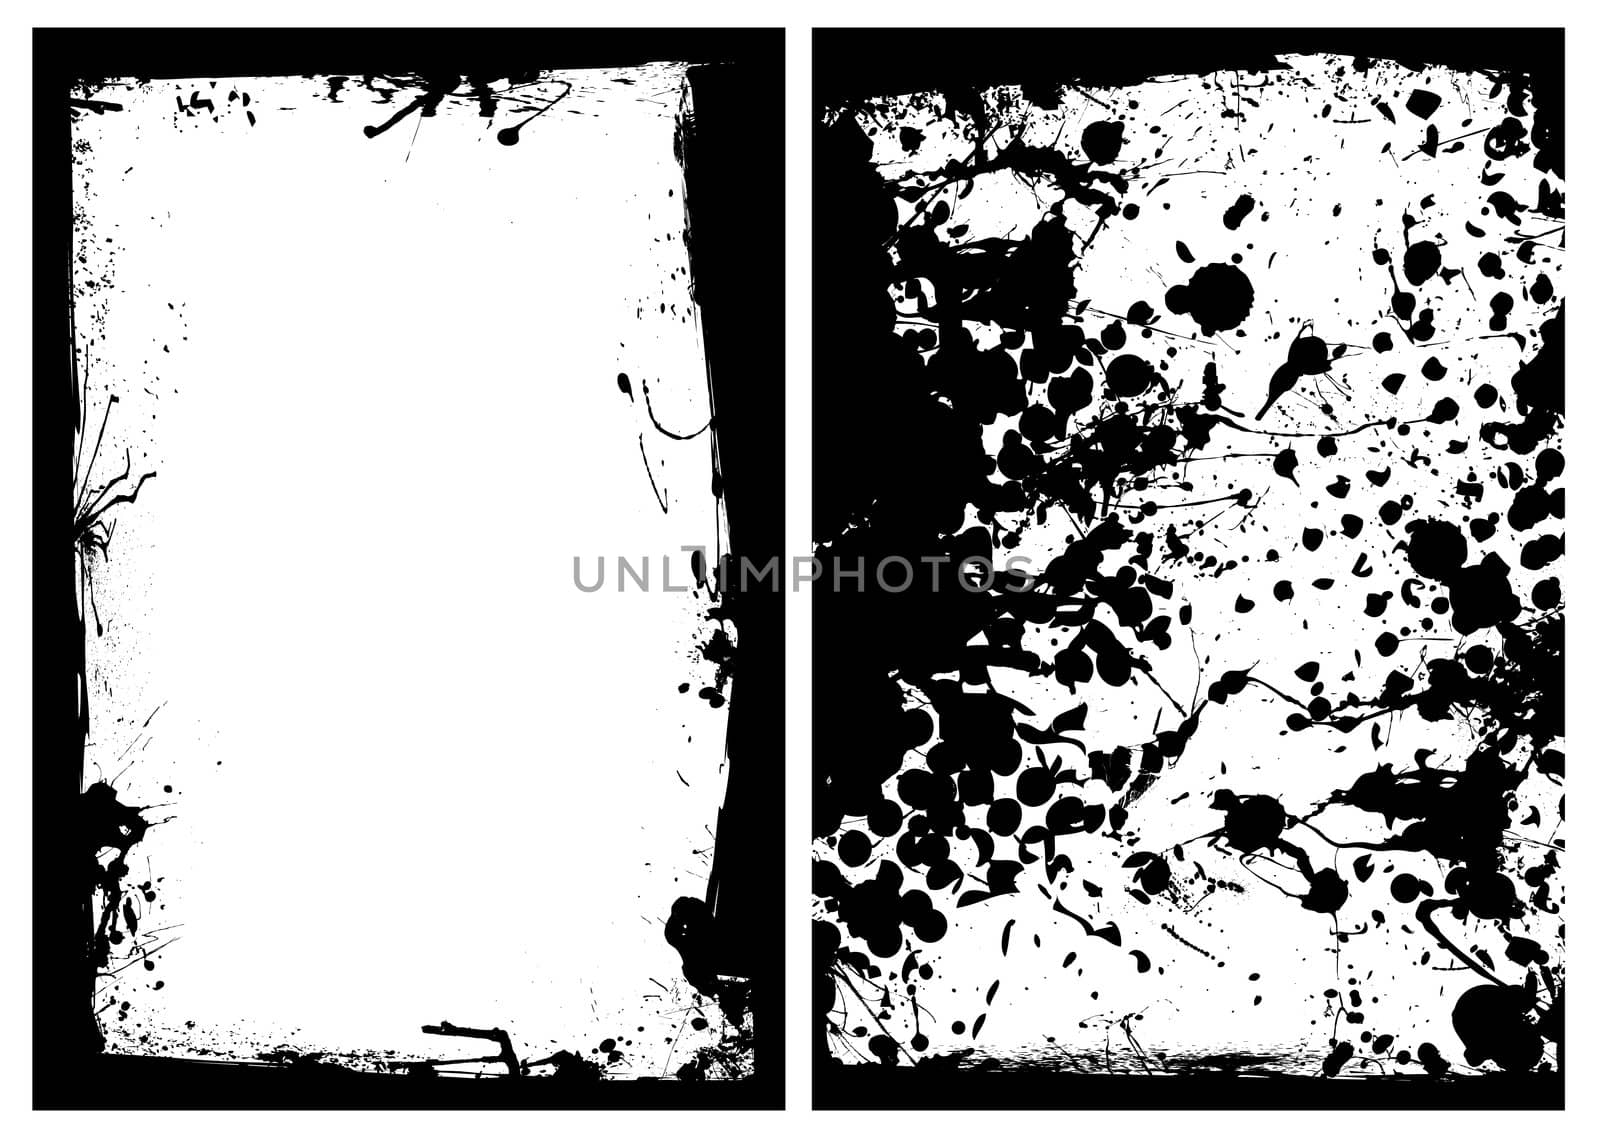 Grunge black ink splat border with two image frames